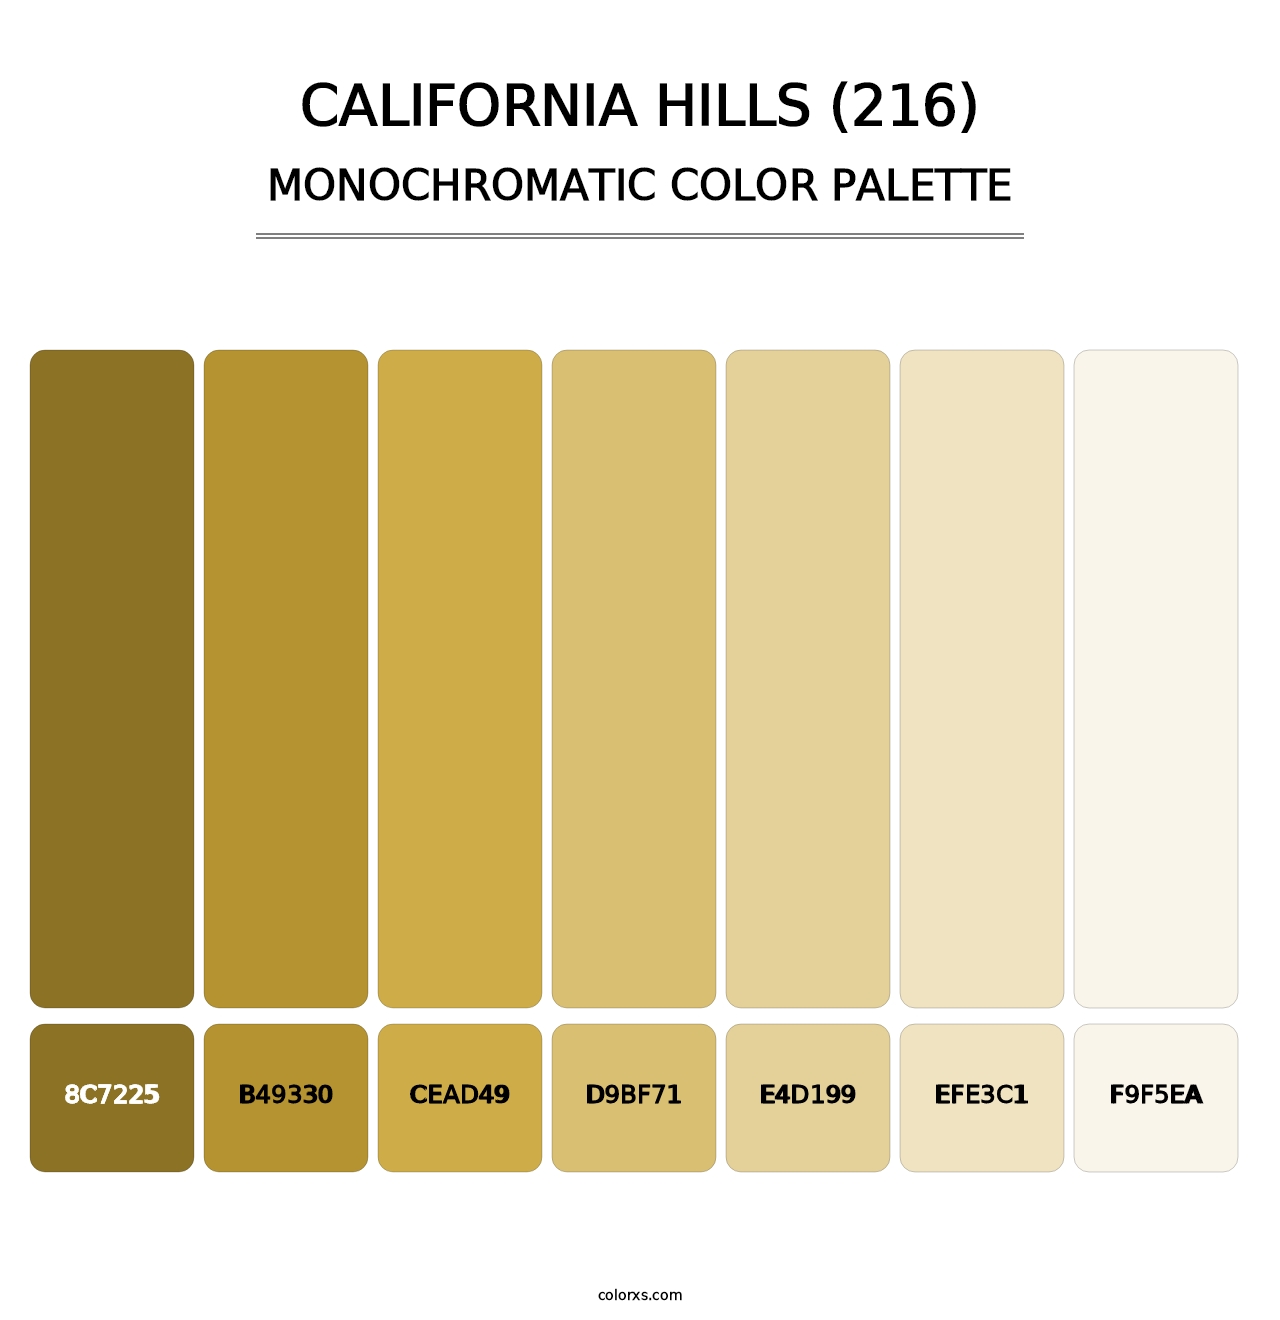 California Hills (216) - Monochromatic Color Palette